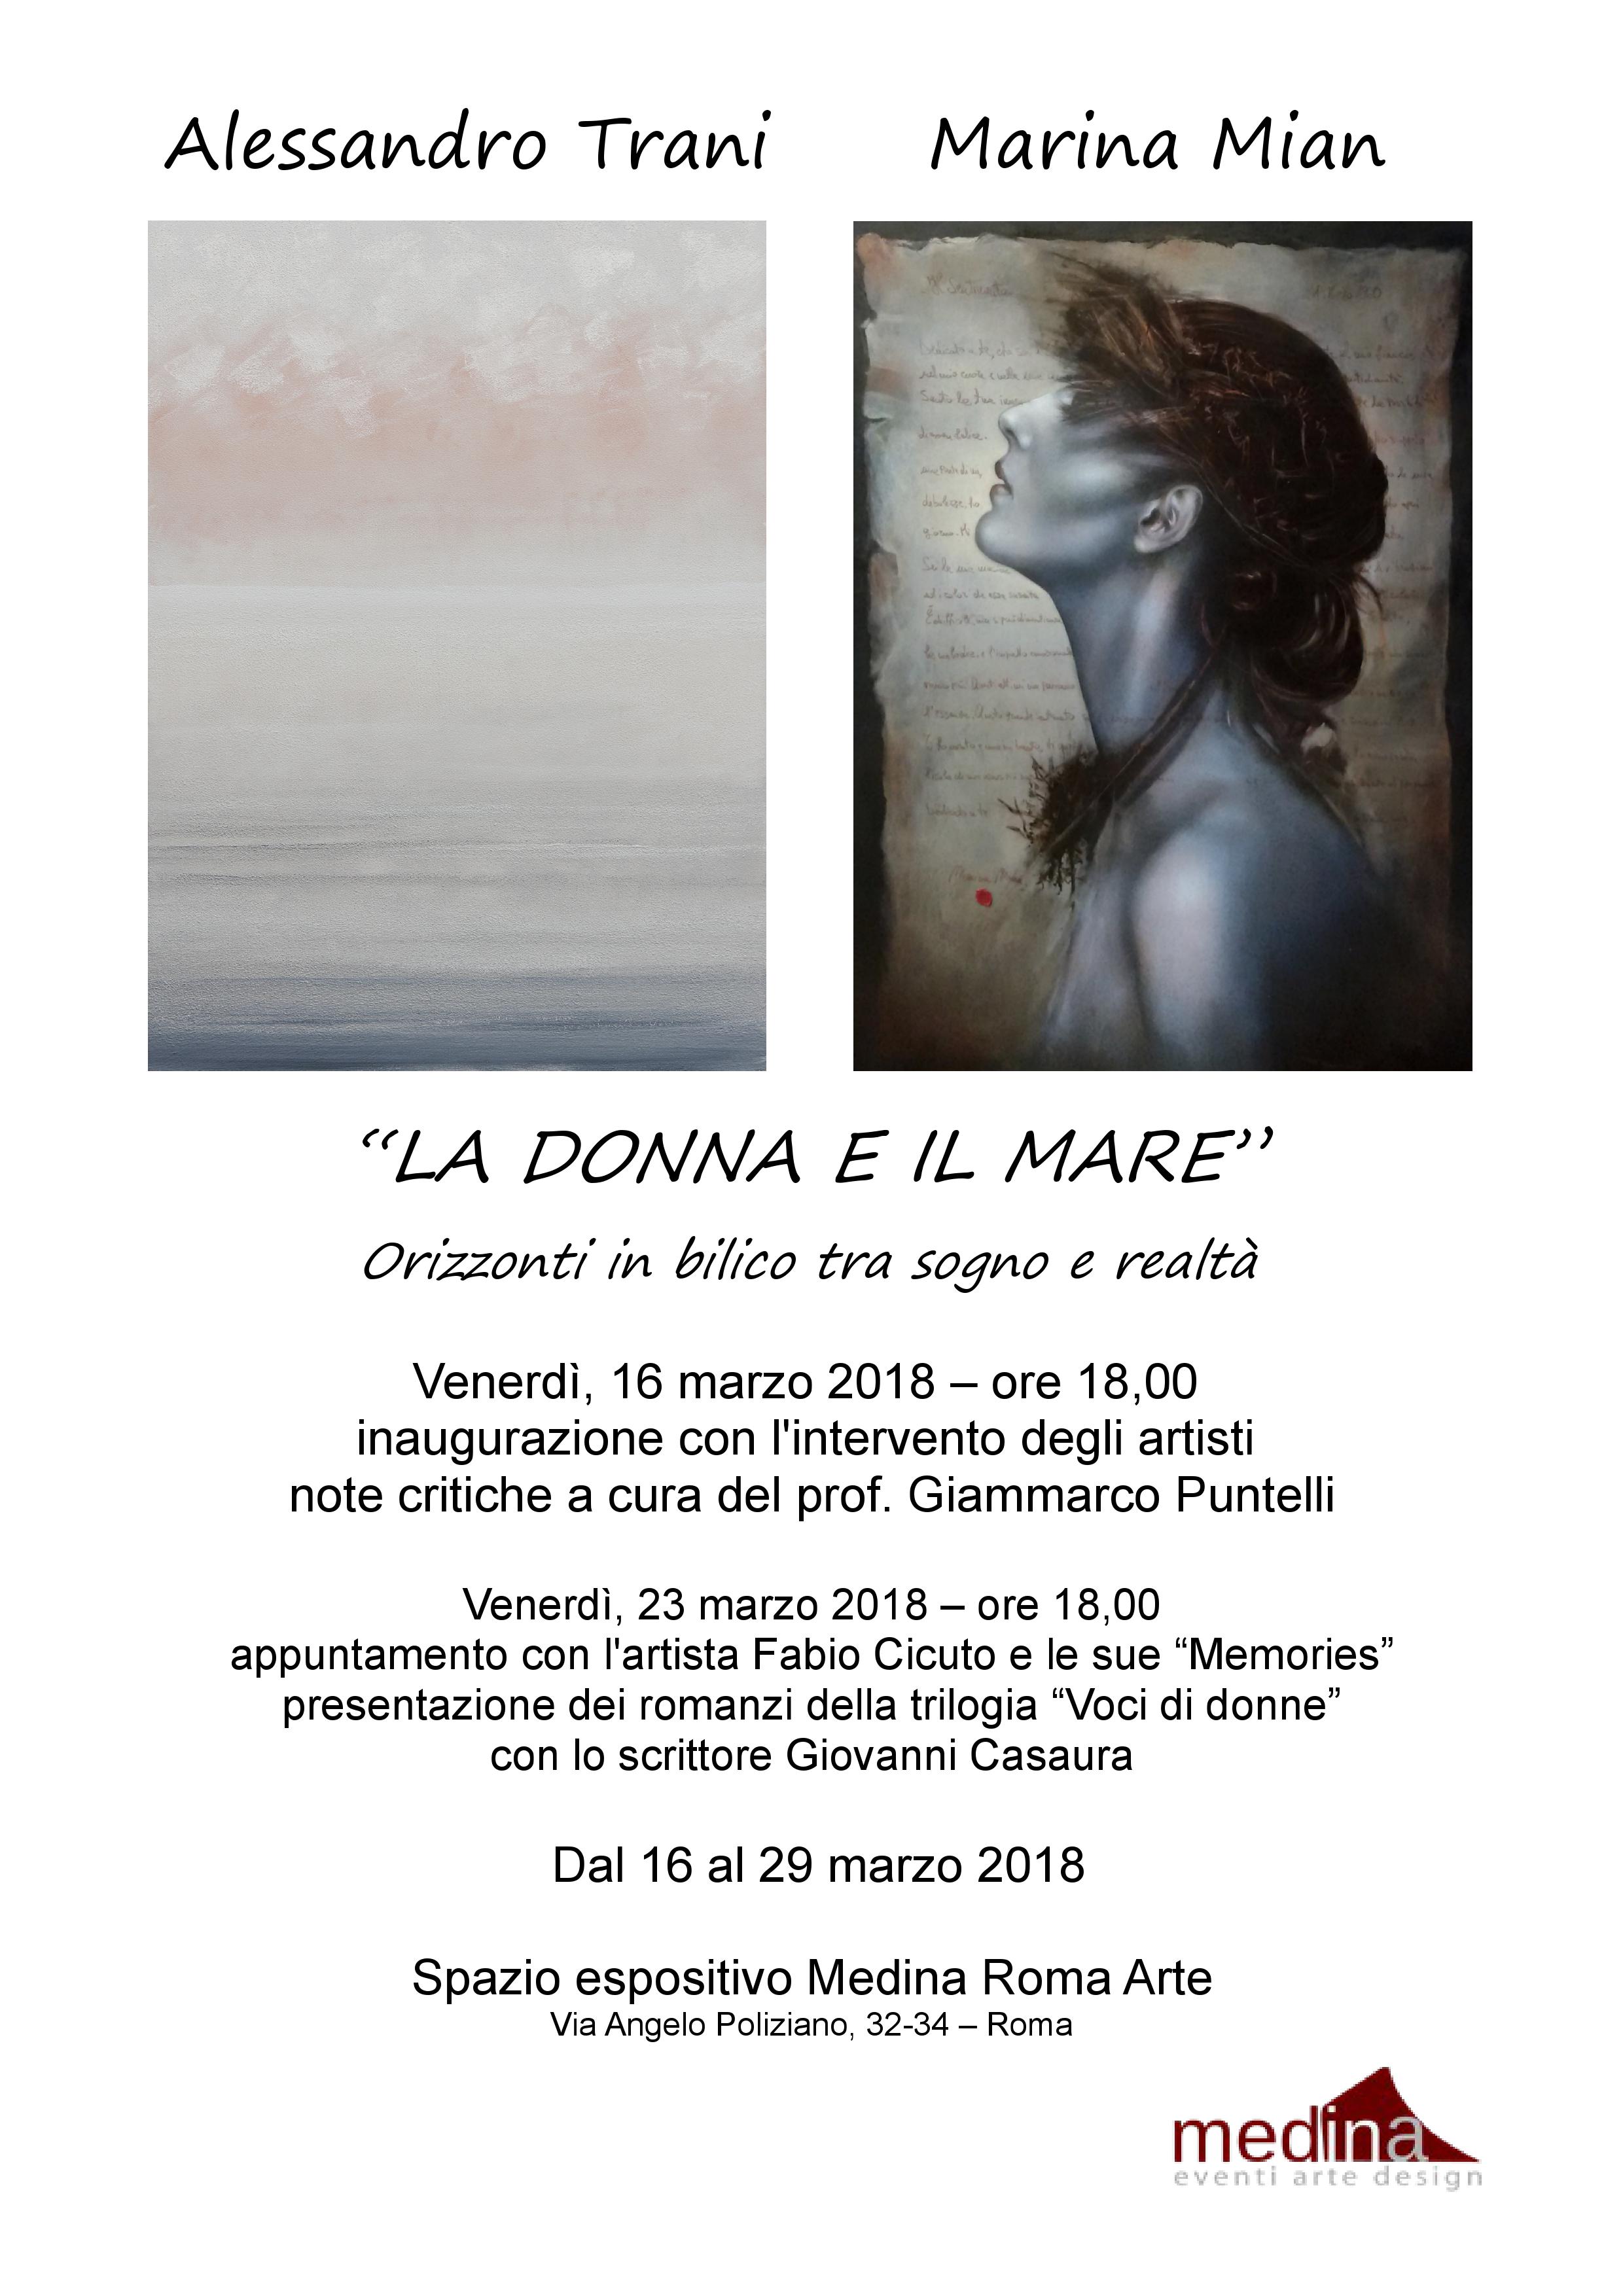 "La Donna e il Mare" di Alessandro Trani e Marina Mian